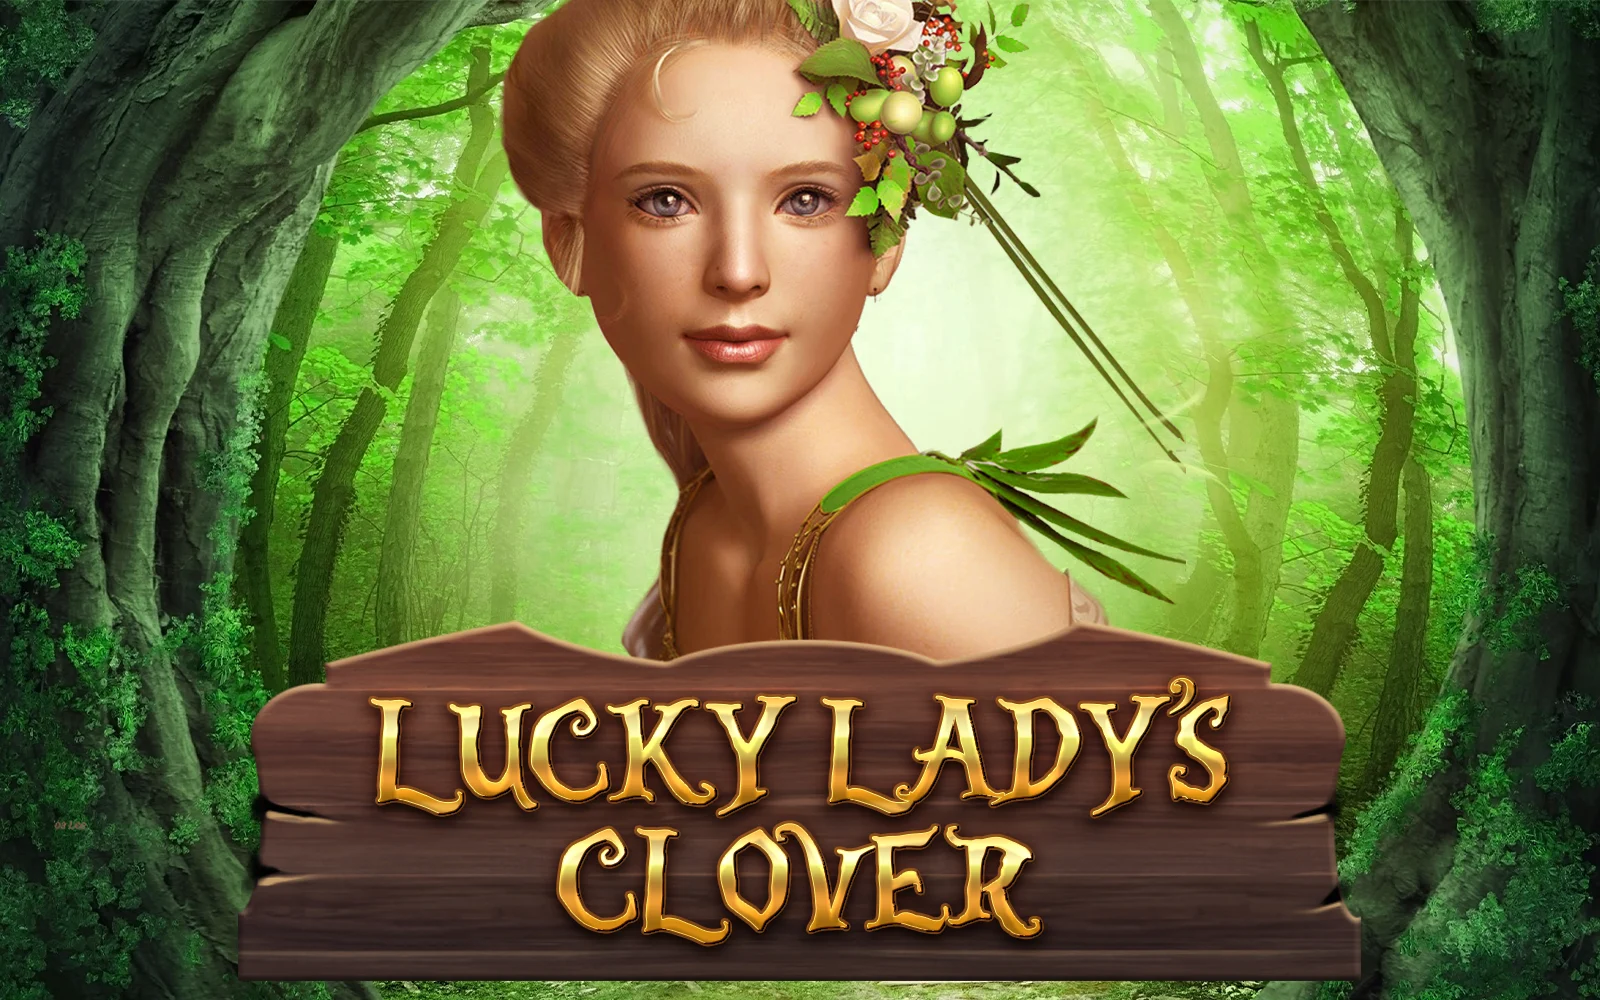 Spielen Sie Lucky Lady's Clover auf Starcasino.be-Online-Casino